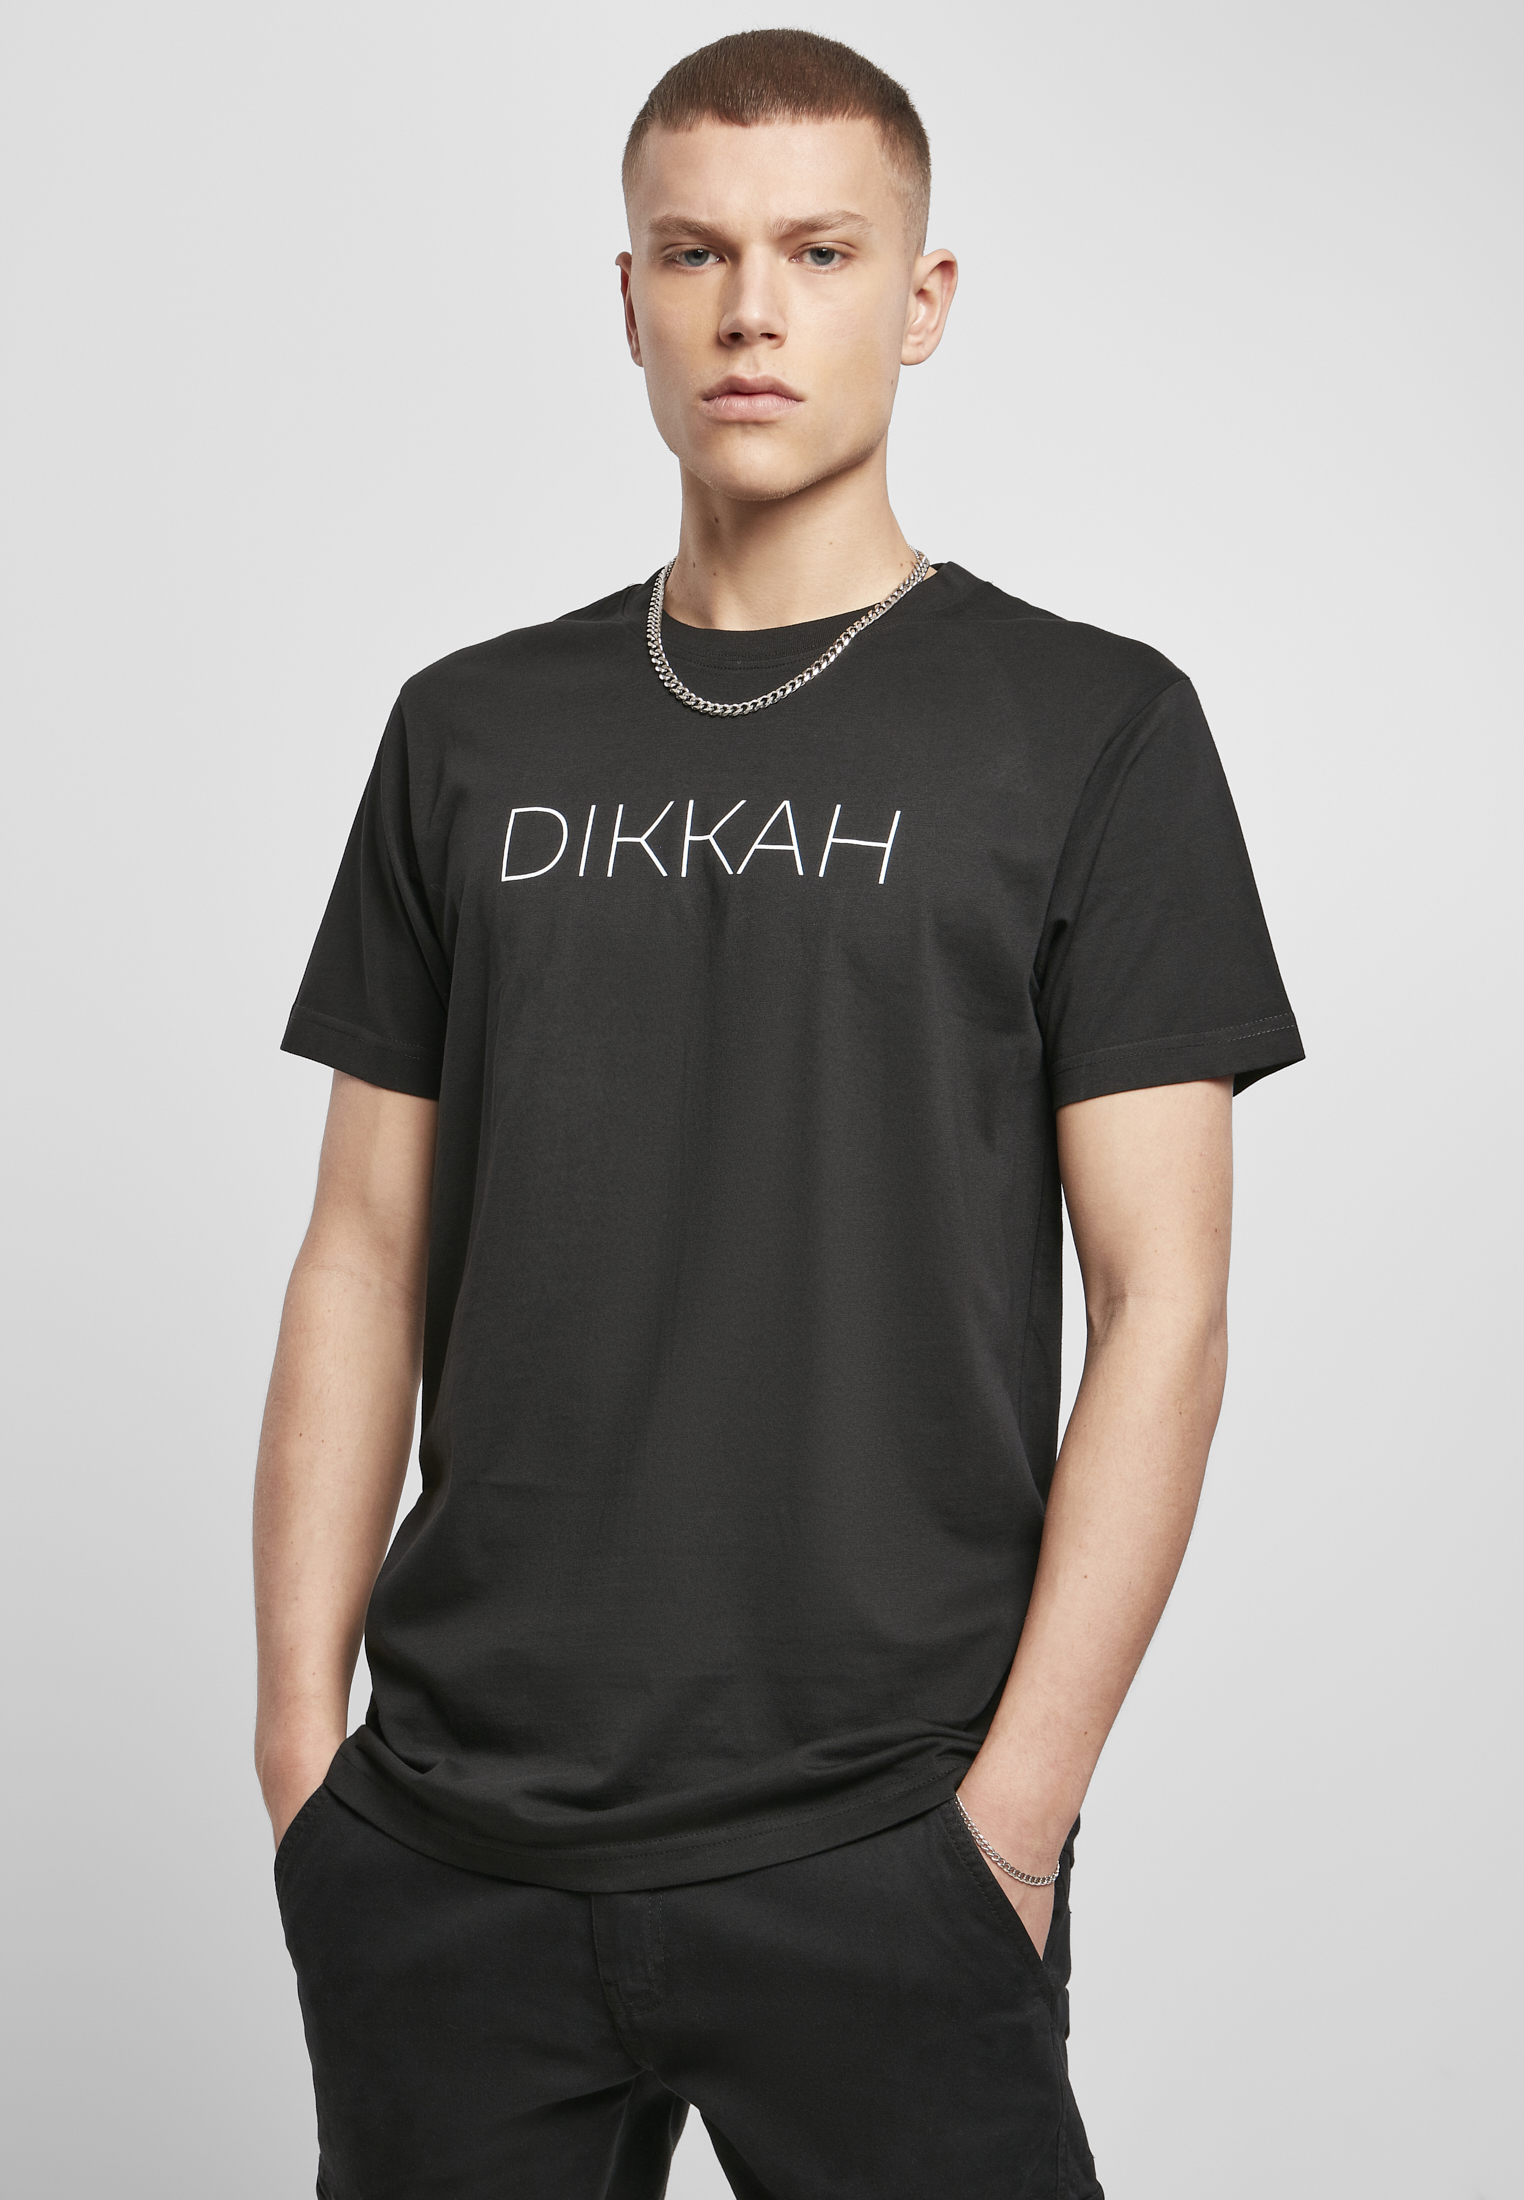 Men's T-shirt Dikkah - black